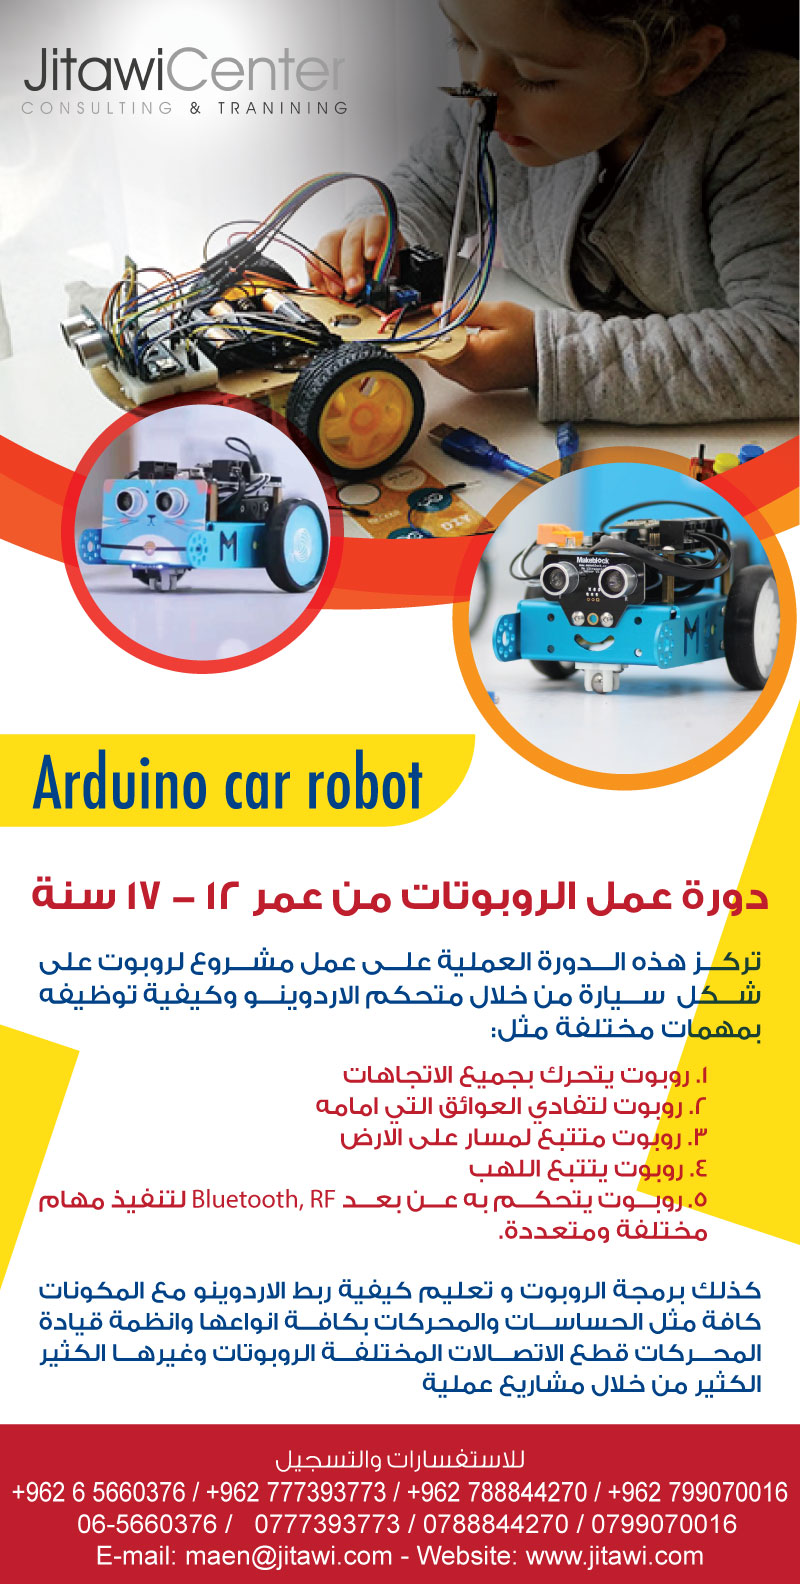 3D Printing Courses in jordan